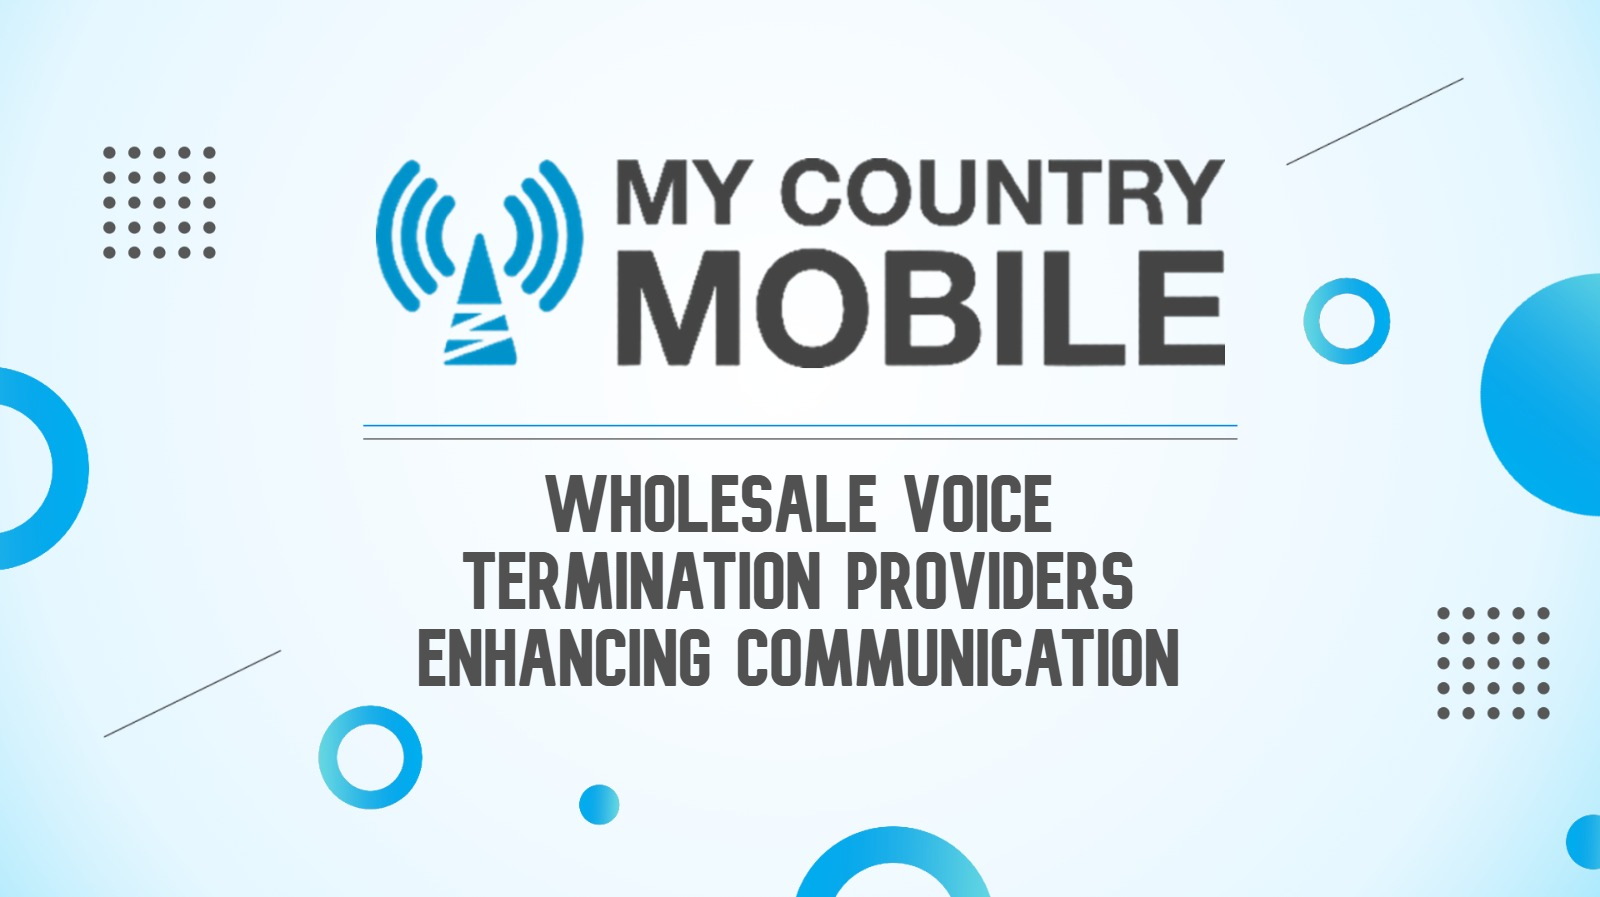 Wholesale Voice Termination Rates